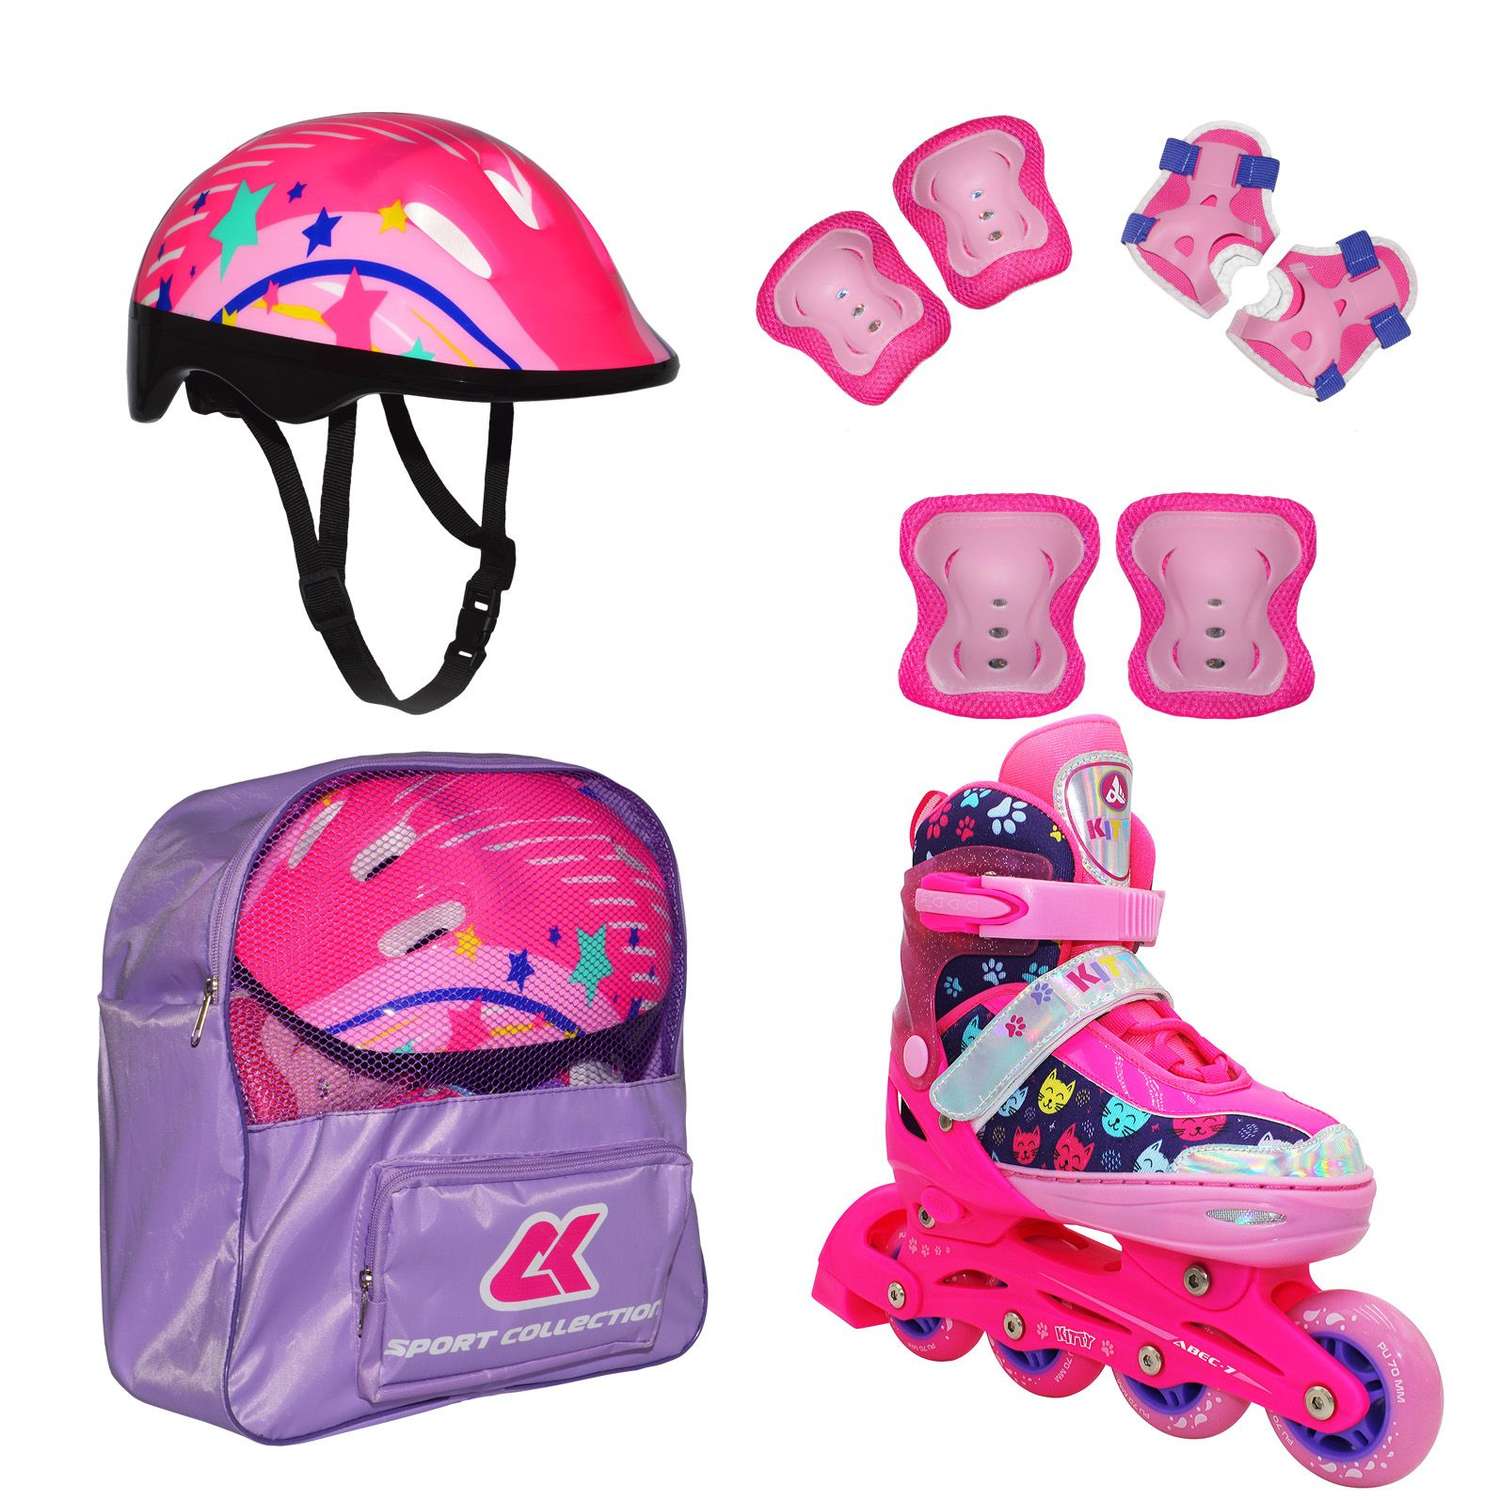 Набор роликовые коньки Sport Collection раздвижные Set Kitty Pink шлем и набор защиты в сумке размер XS 25-28 - фото 1